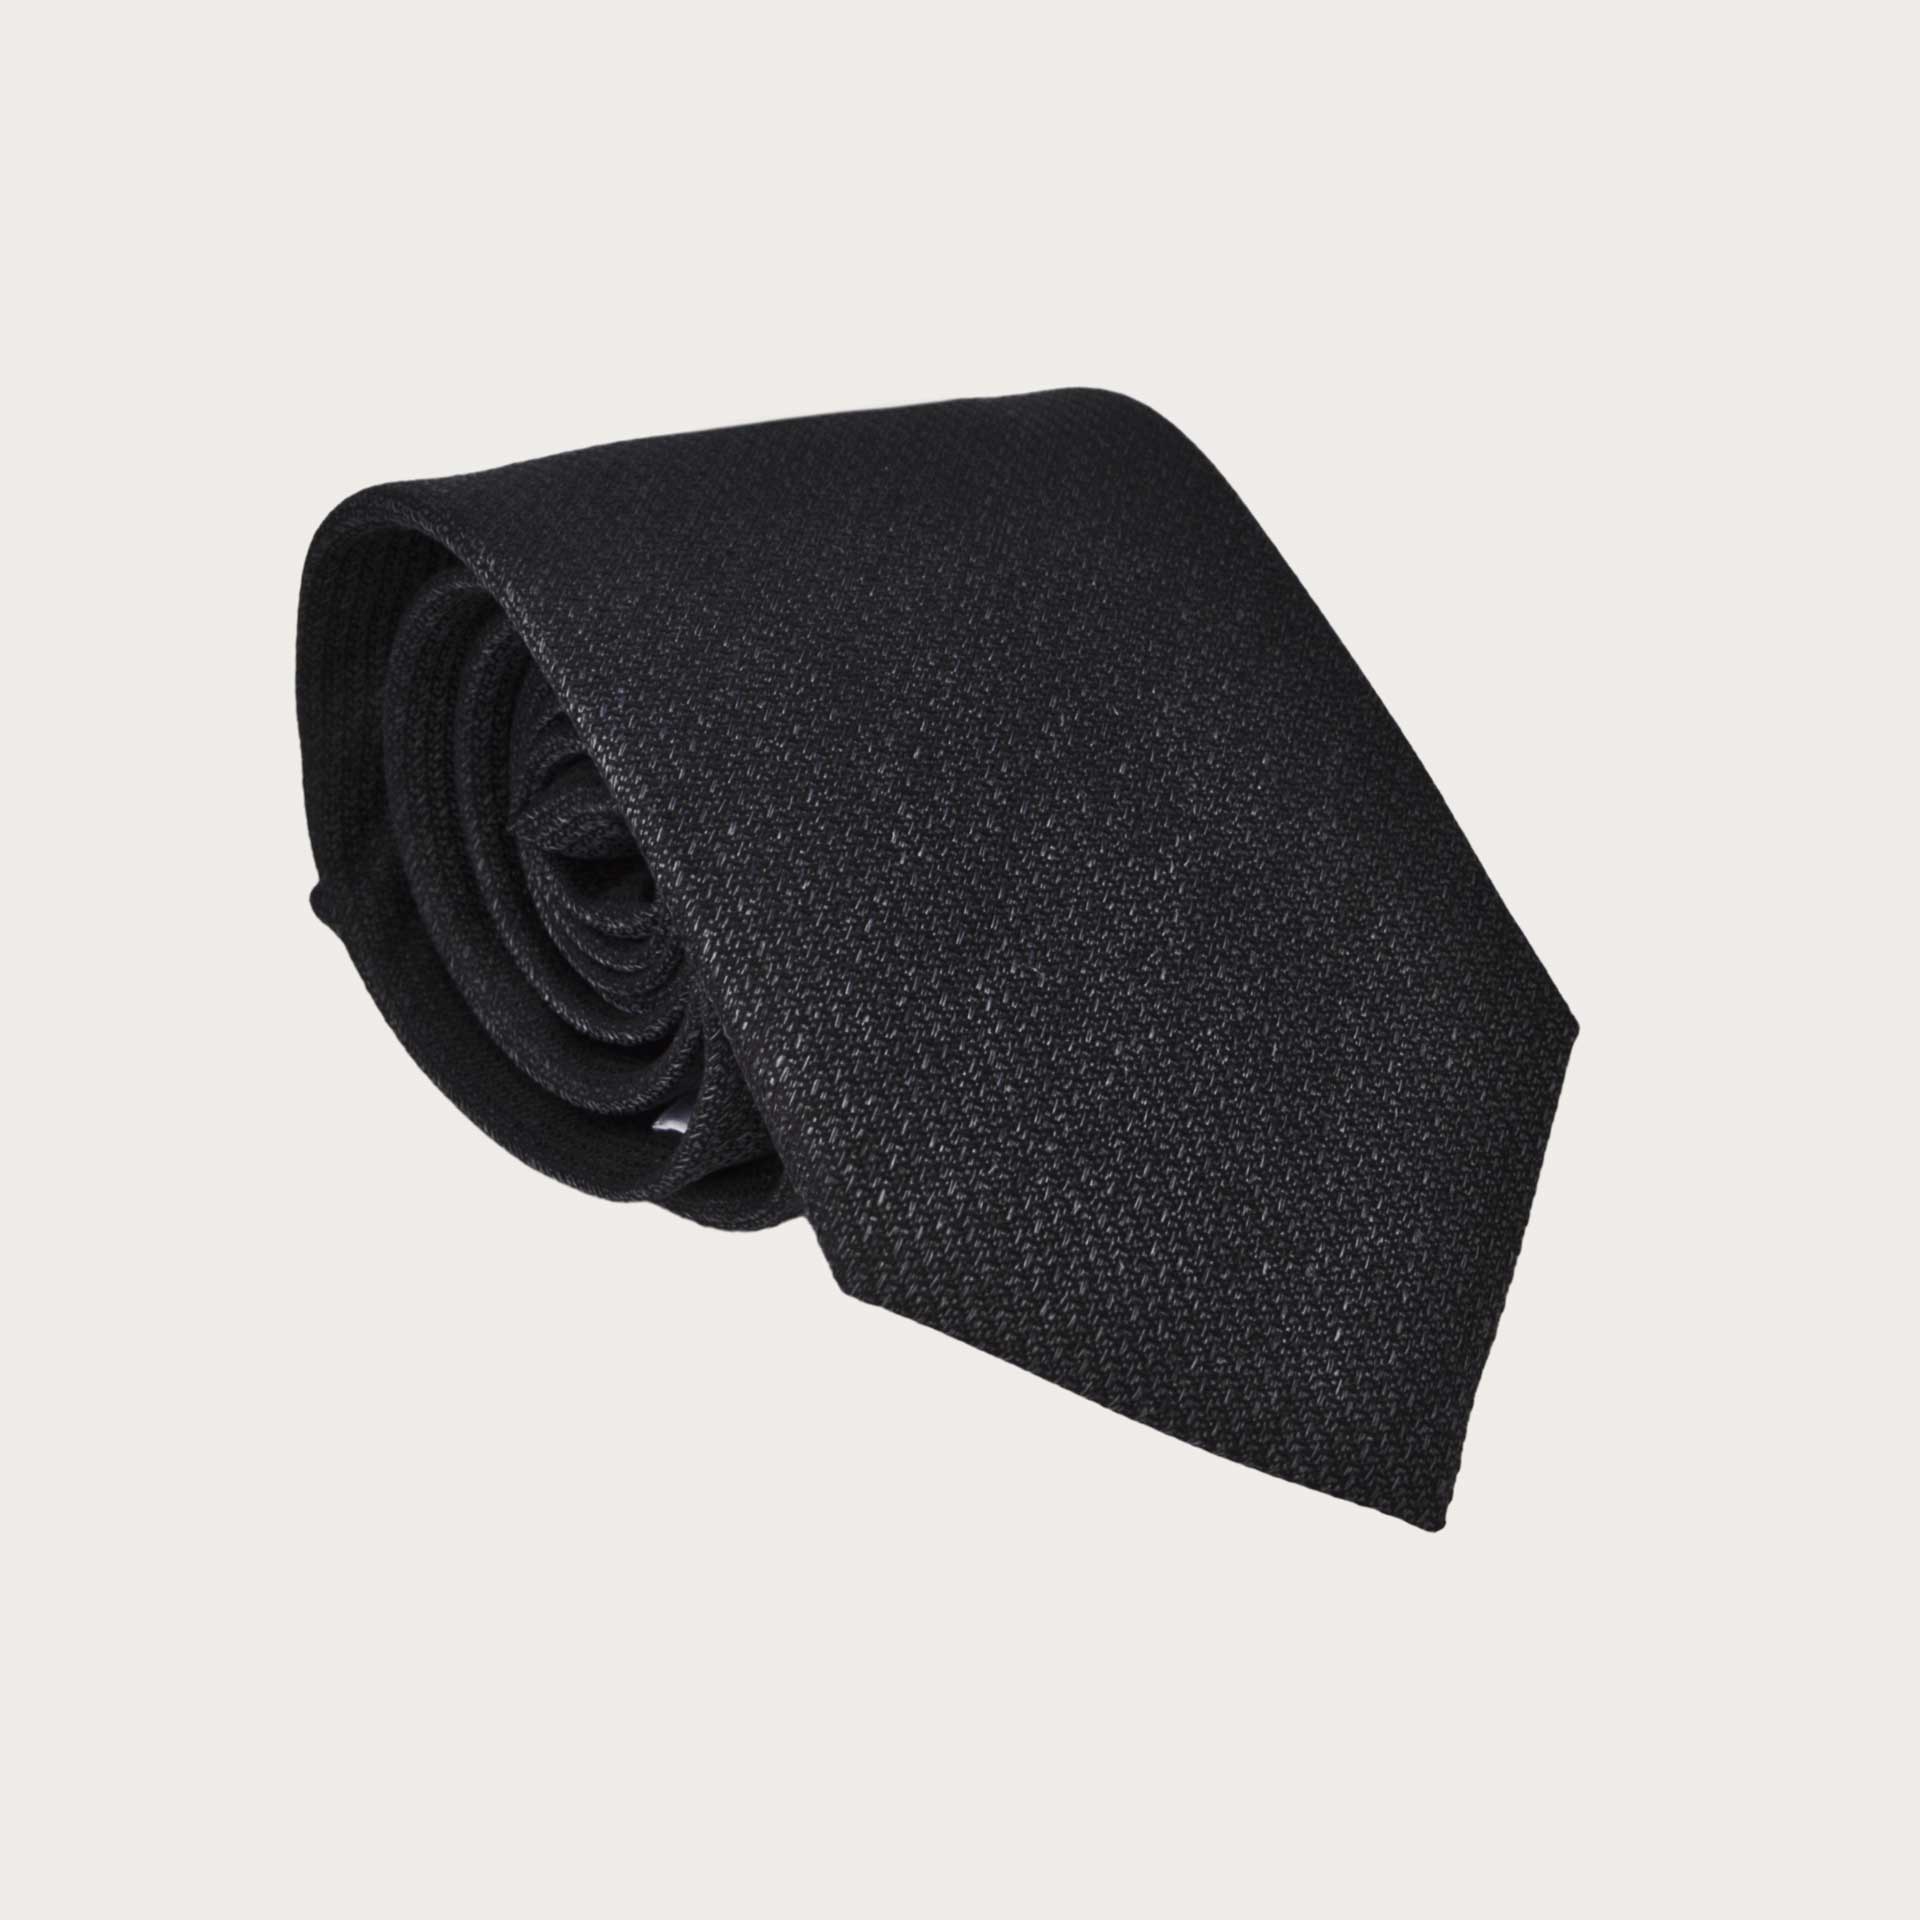 BRUCLE Elegante cravatta in seta nera melange